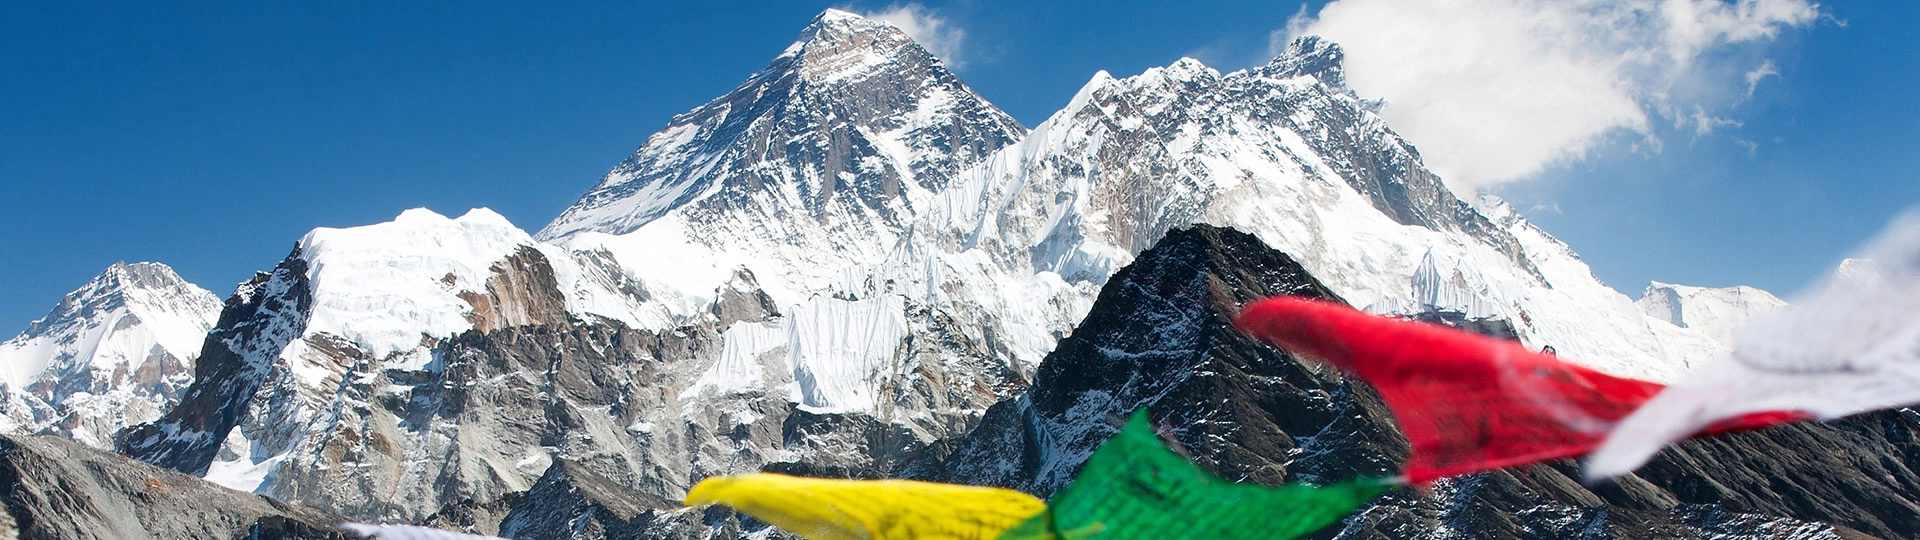 Himalayan Base Camp Altitude